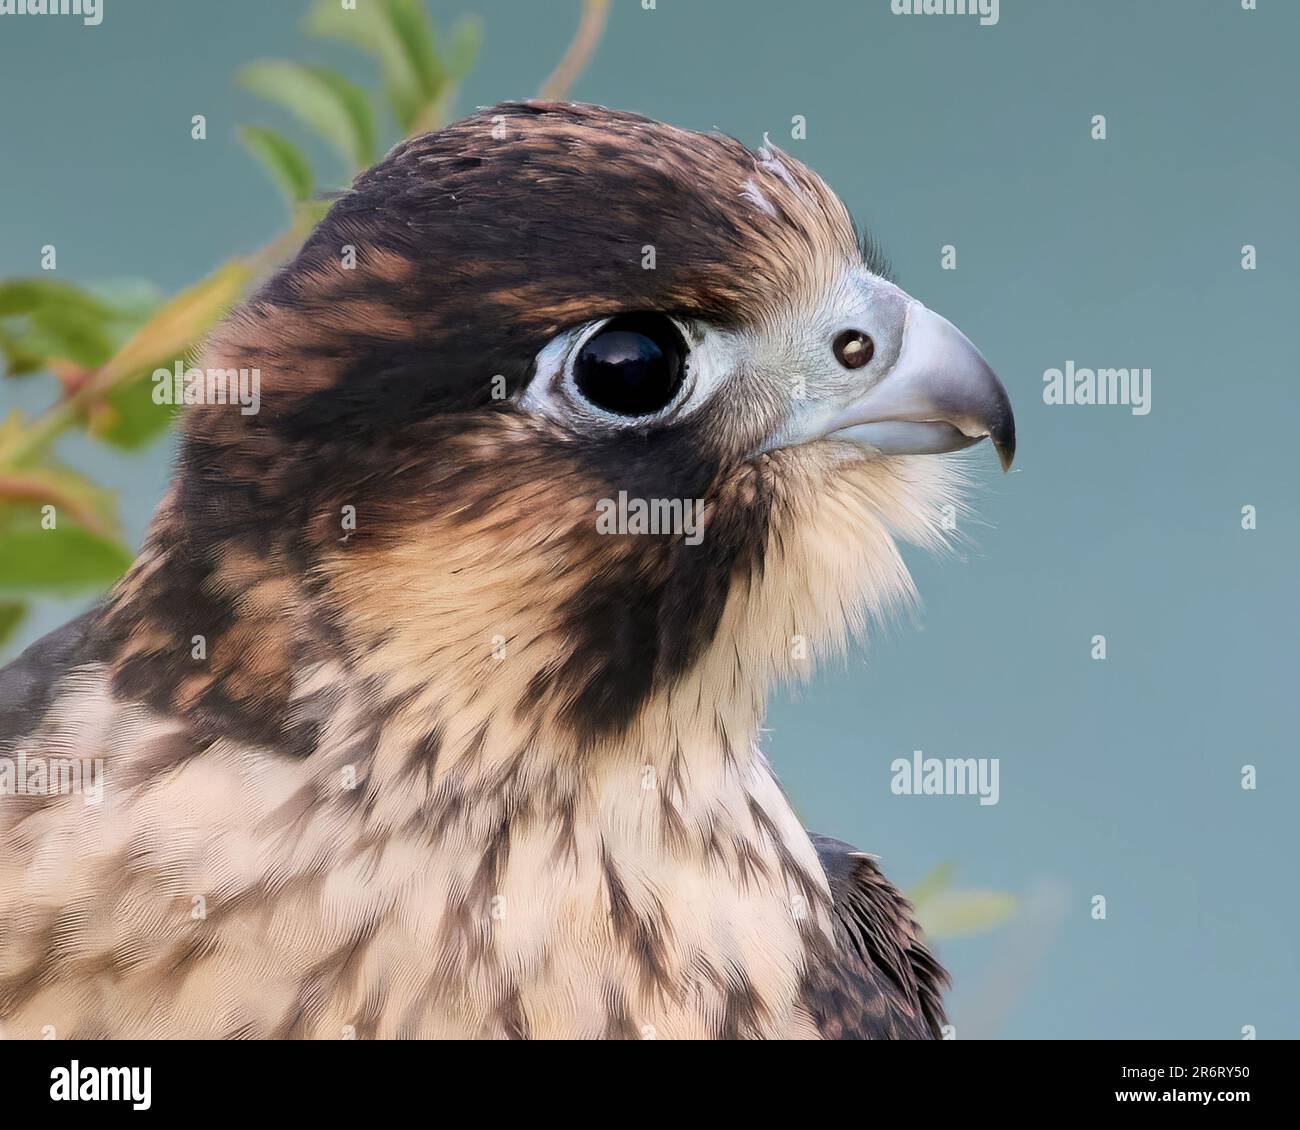 Falco pellegrino giovanile (Falco peregrinus) nel suo ambiente naturale Foto Stock